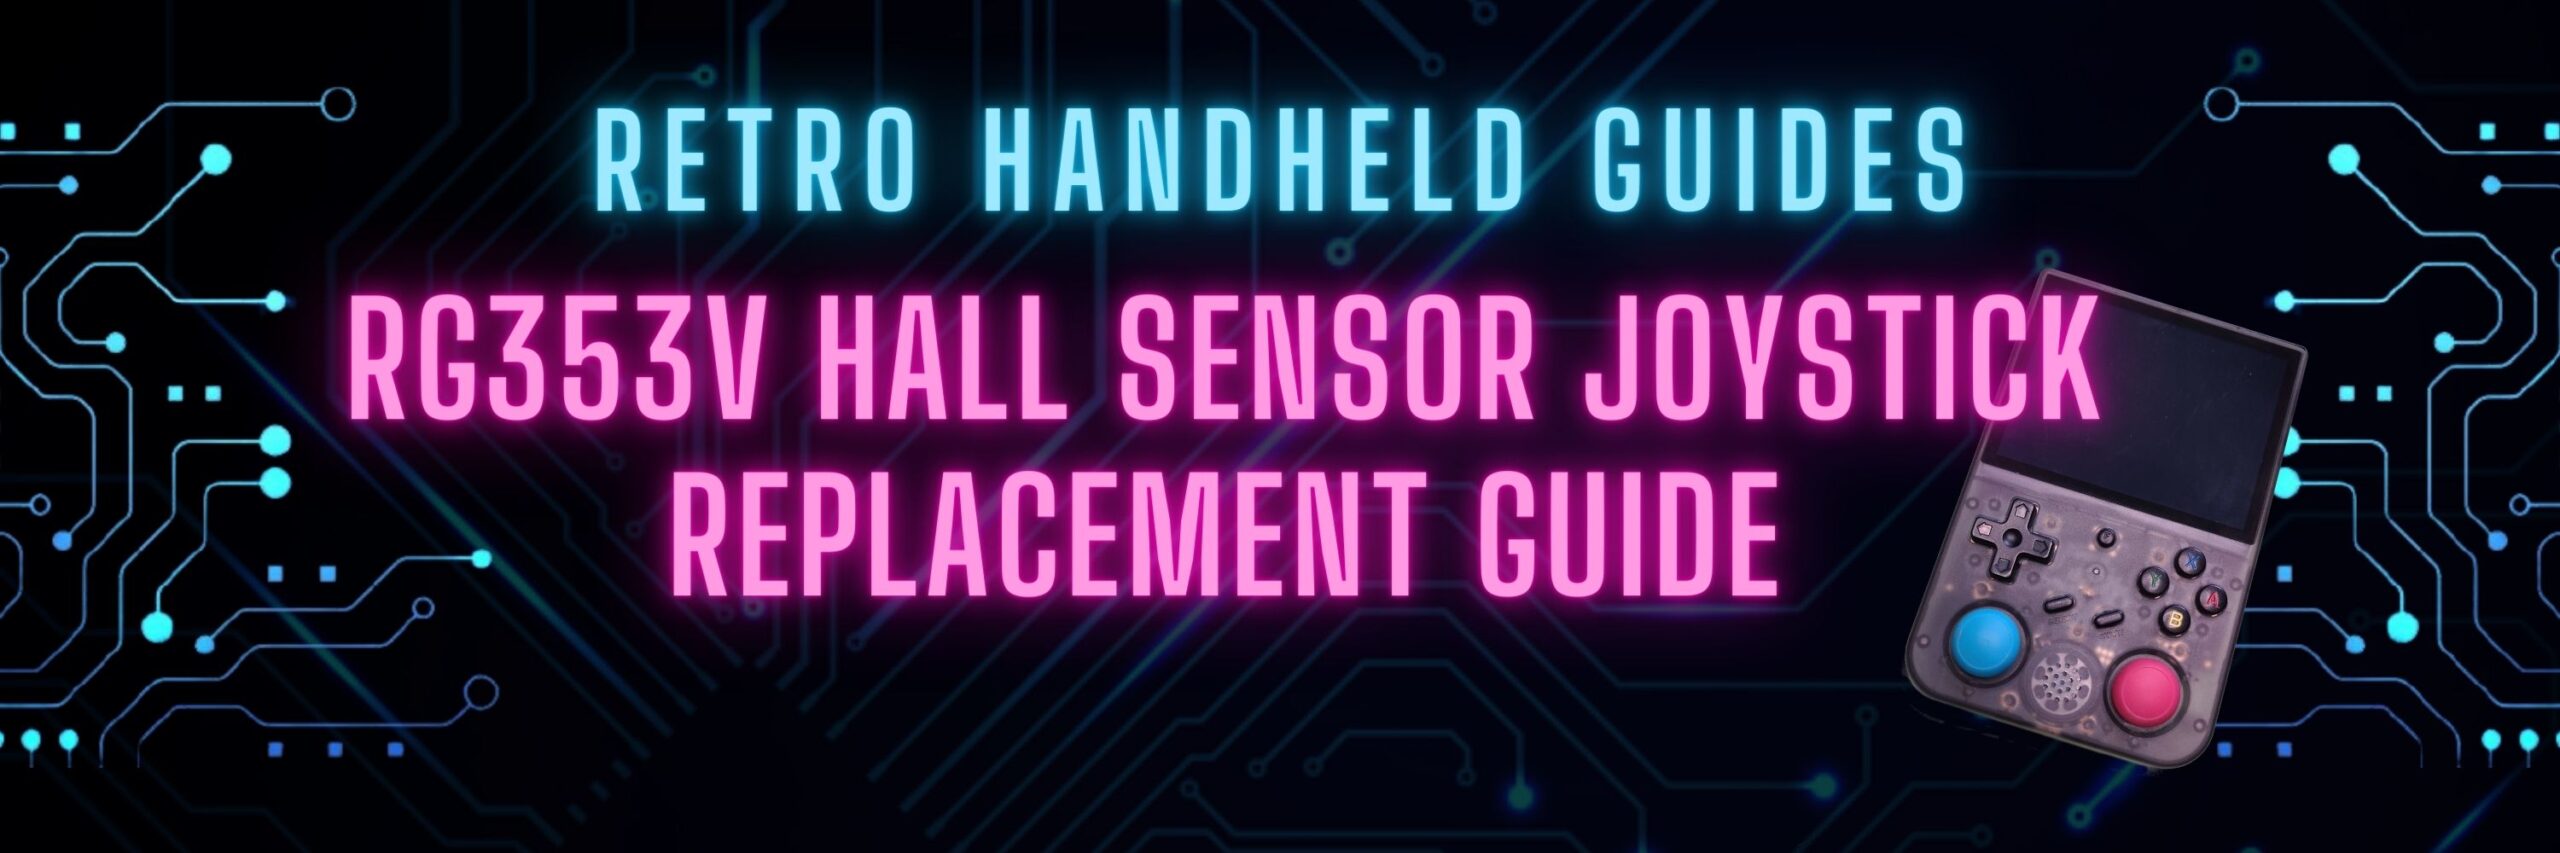 RG353V Hall Sensor Joystick Replacement Guide